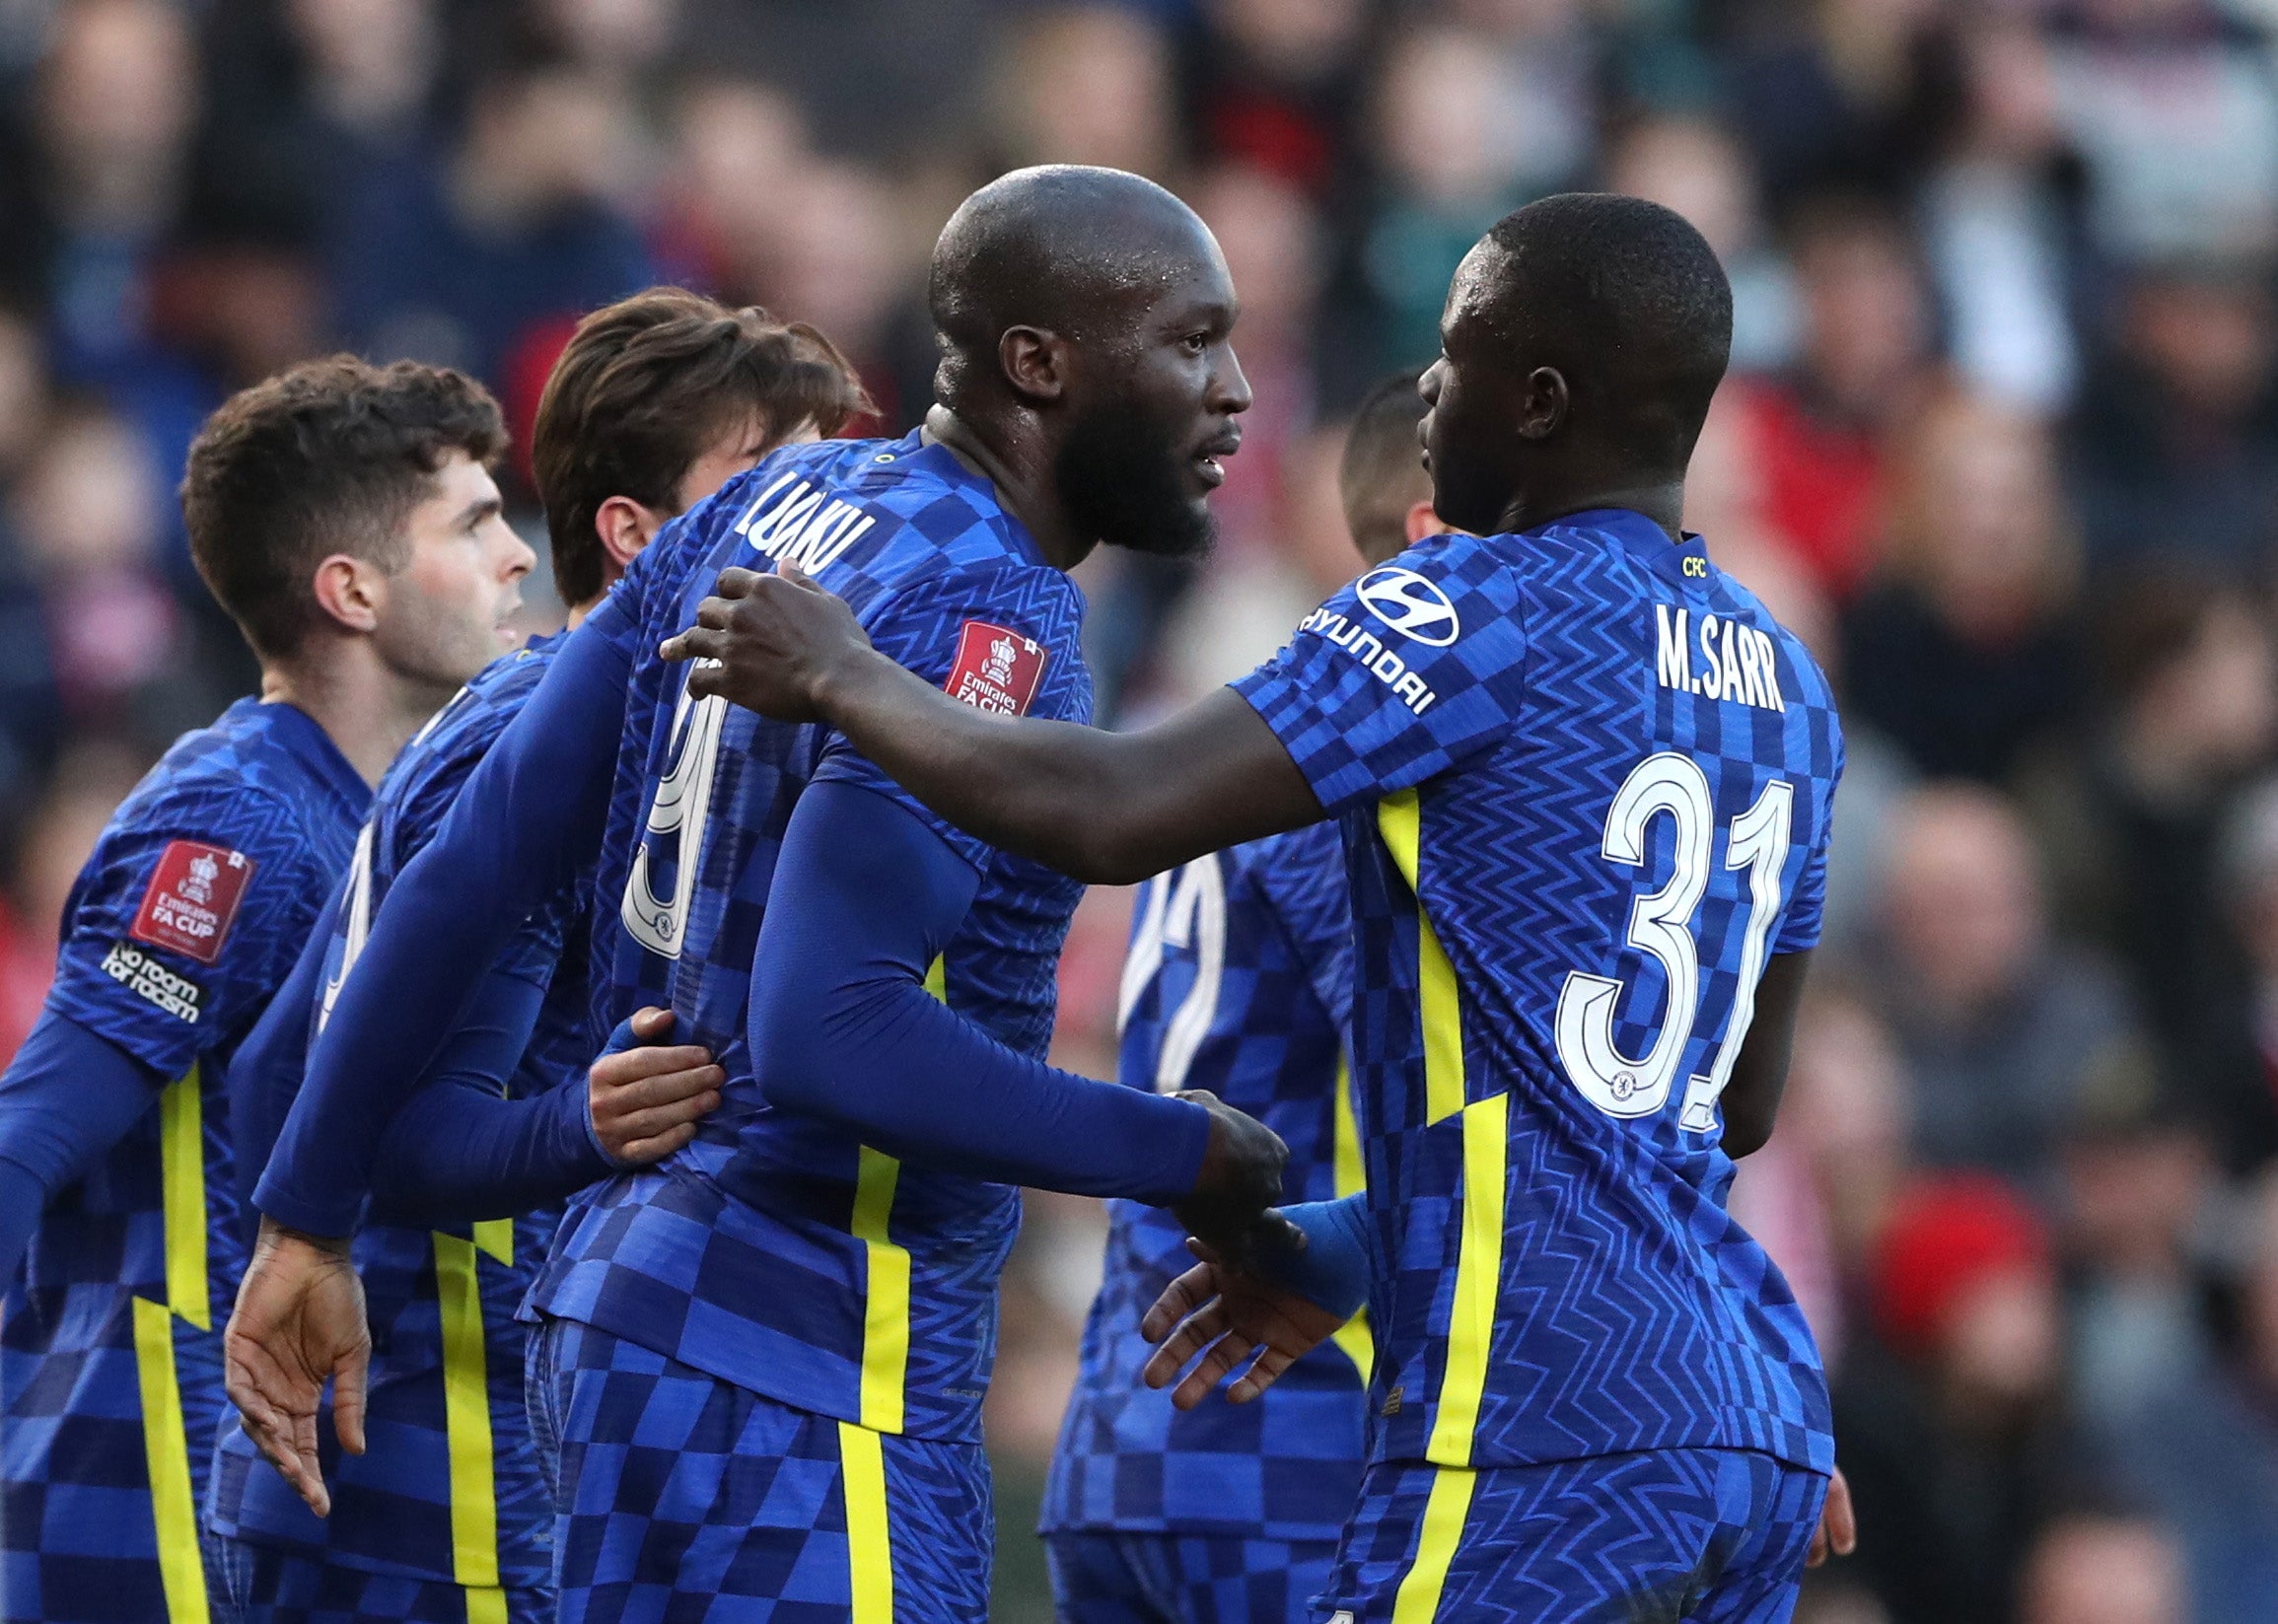 Romelu Lukaku scored as Chelsea progressed